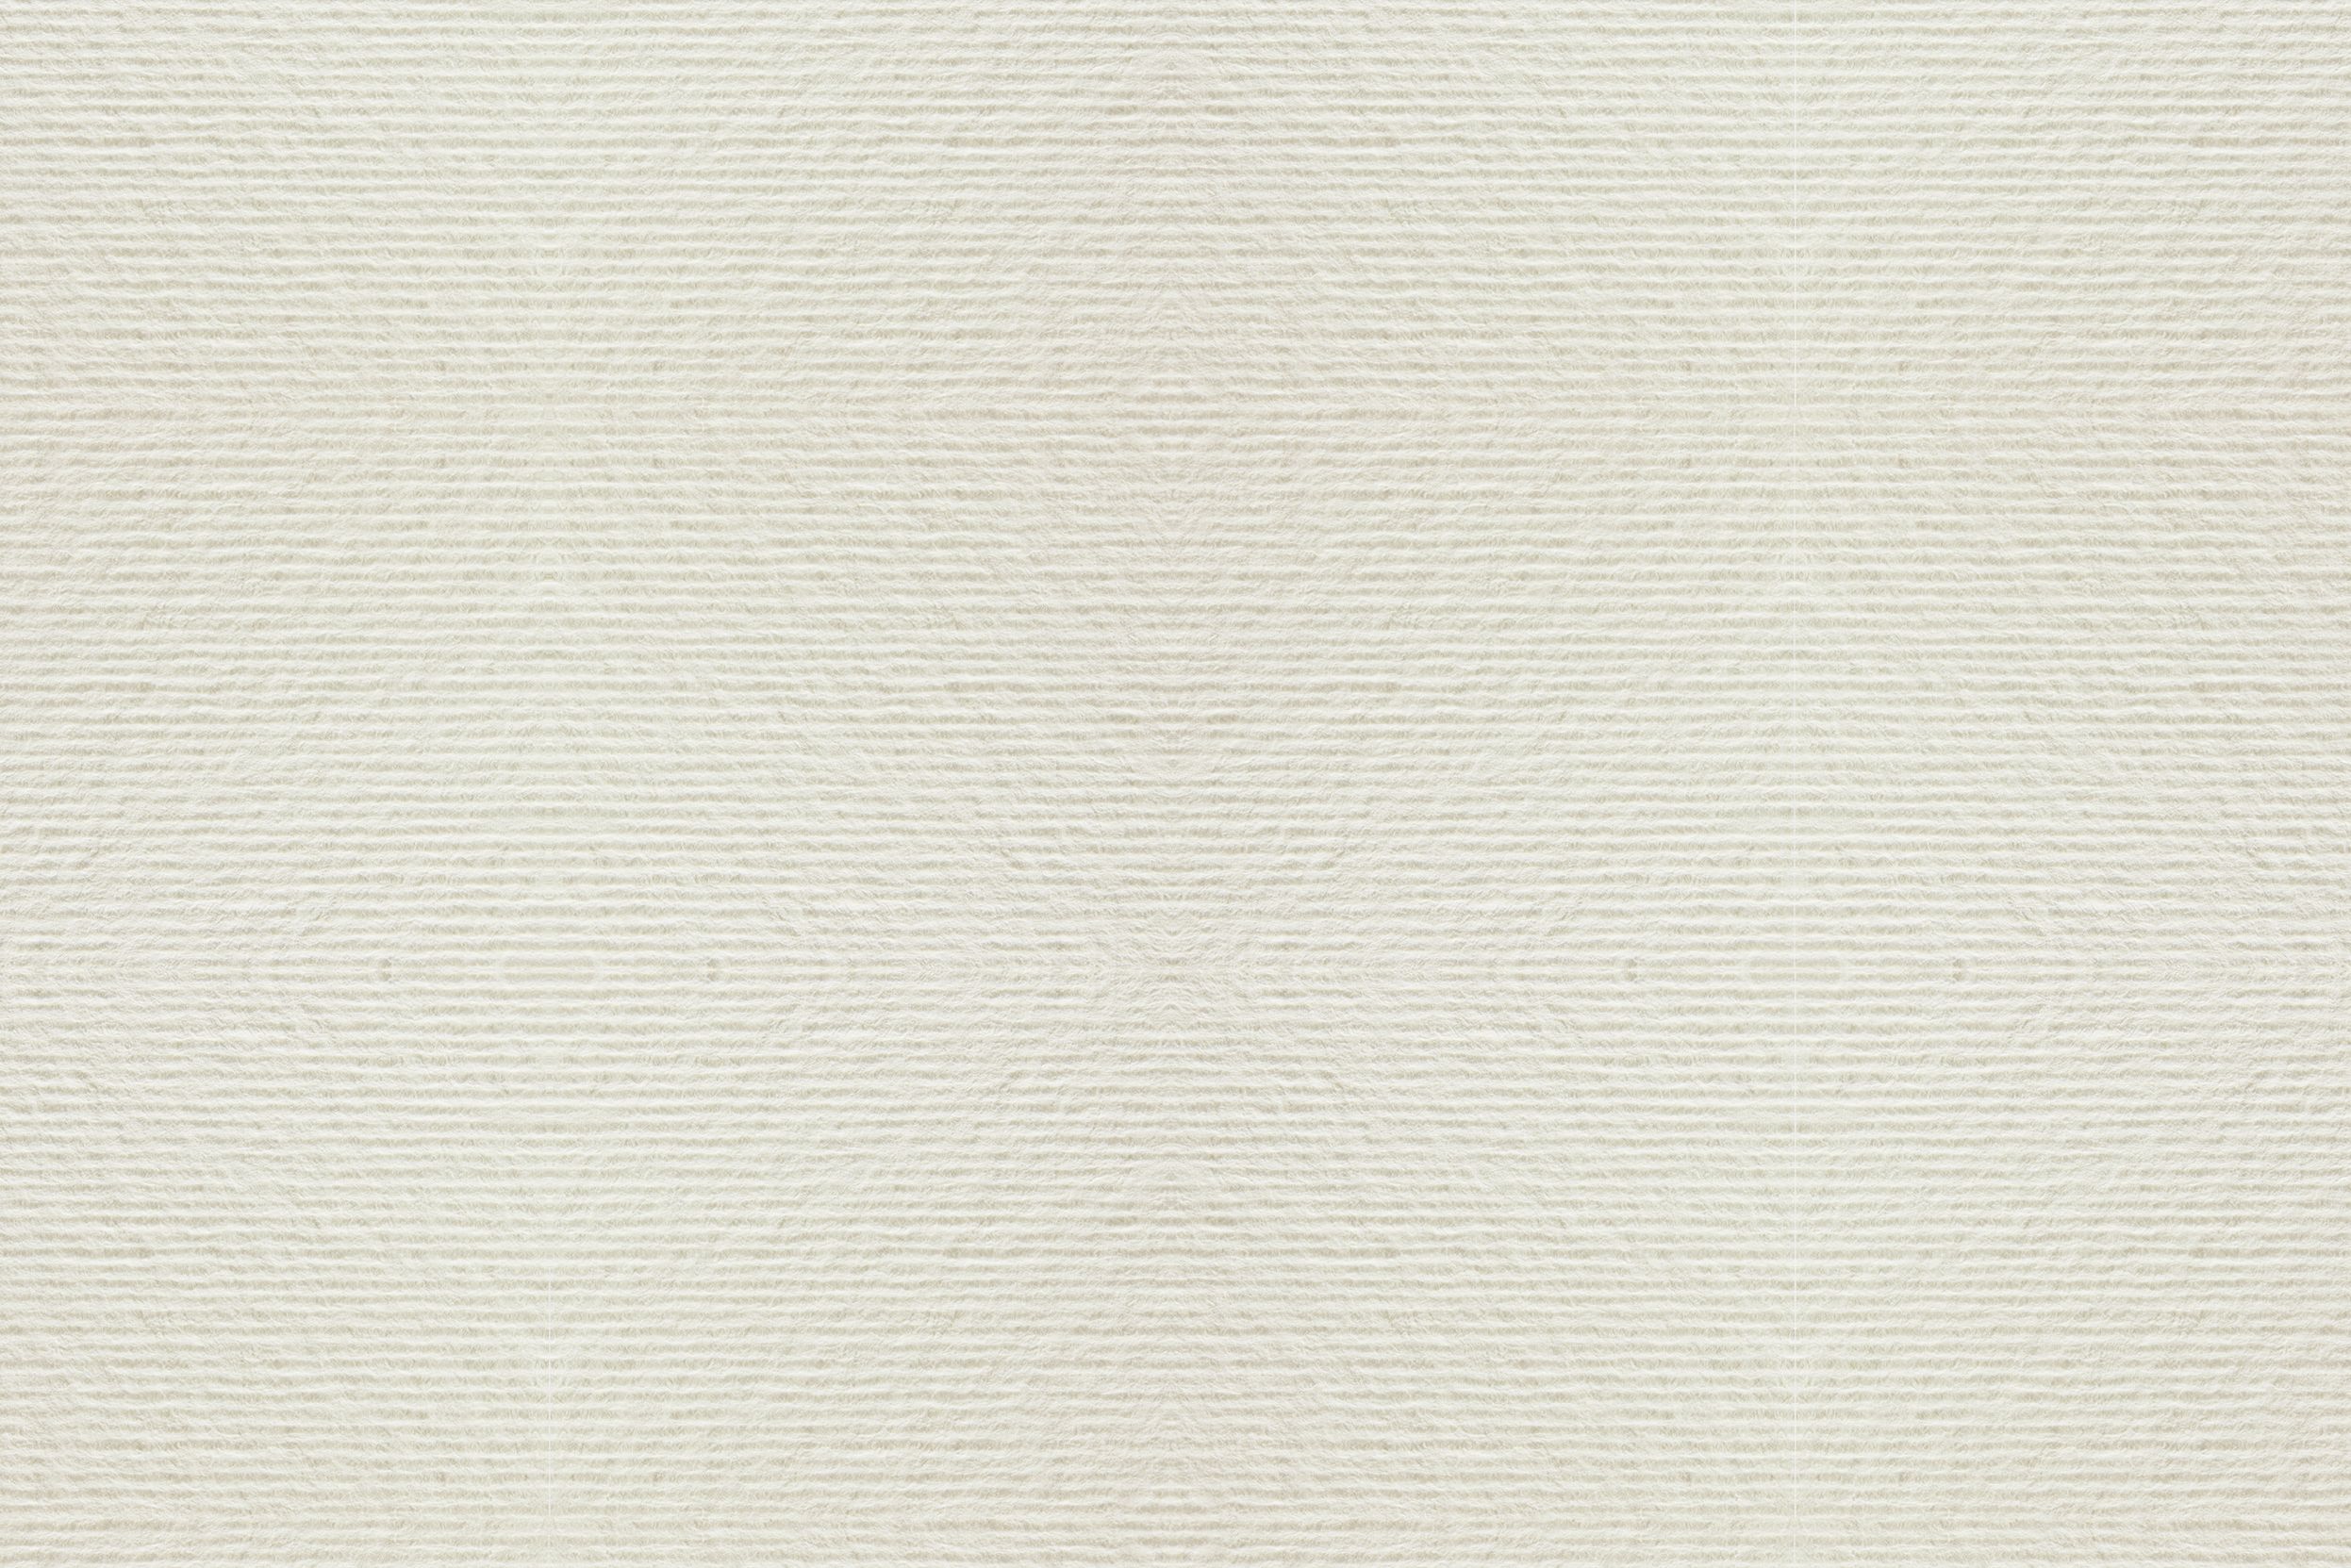 Acquerello Crème (bande de protection (strip), découpe carrée): Papier naturel ivoire de pure cellulose certifiée FSC. Surface: gaufrée avec lignes parallèles. Producteur: Fedrigoni